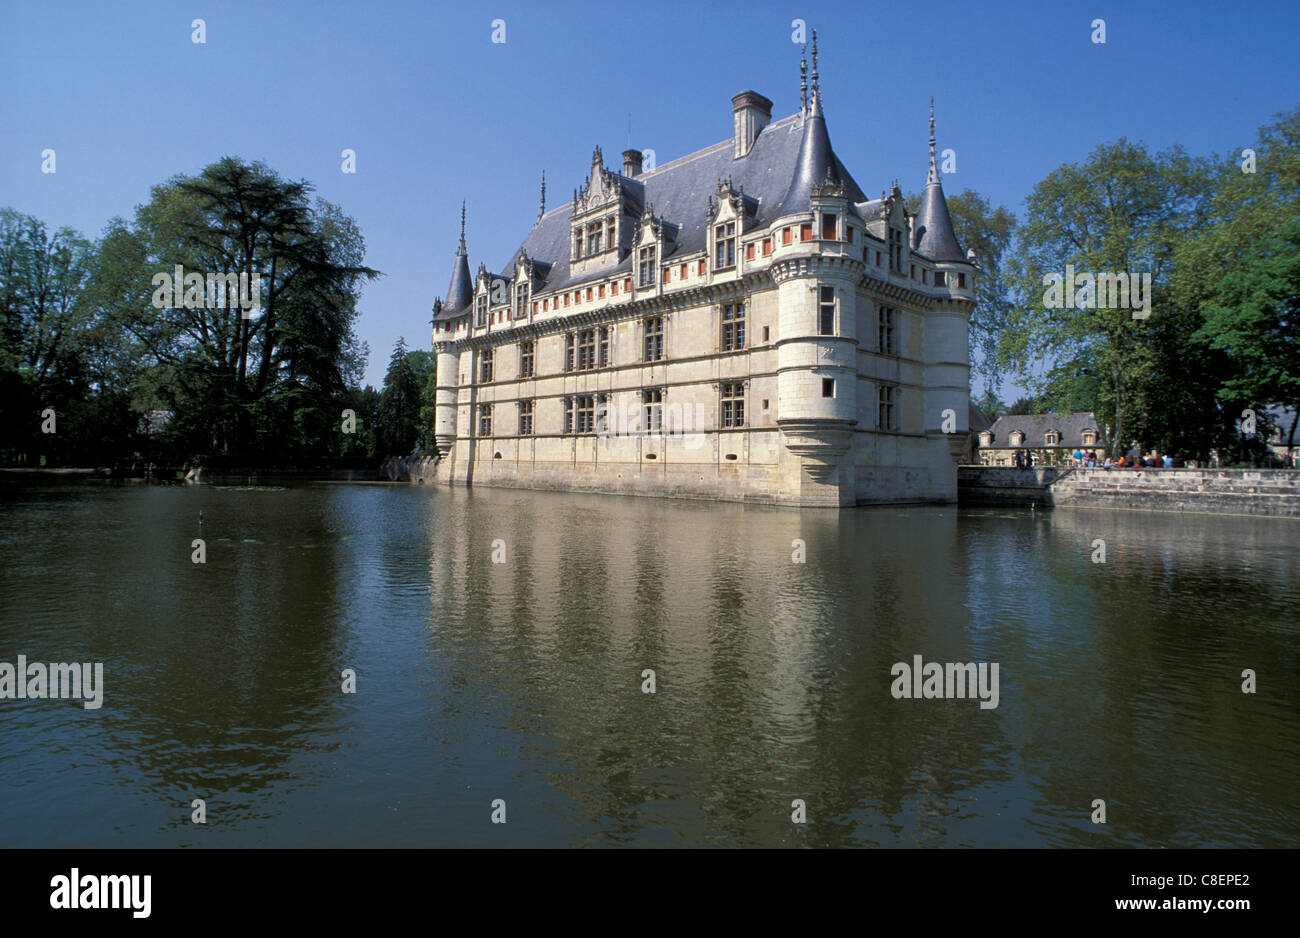 Chateau, castle, Azay le Rideau, Val de Loire, Loire valley, France, Europe, water Stock Photo